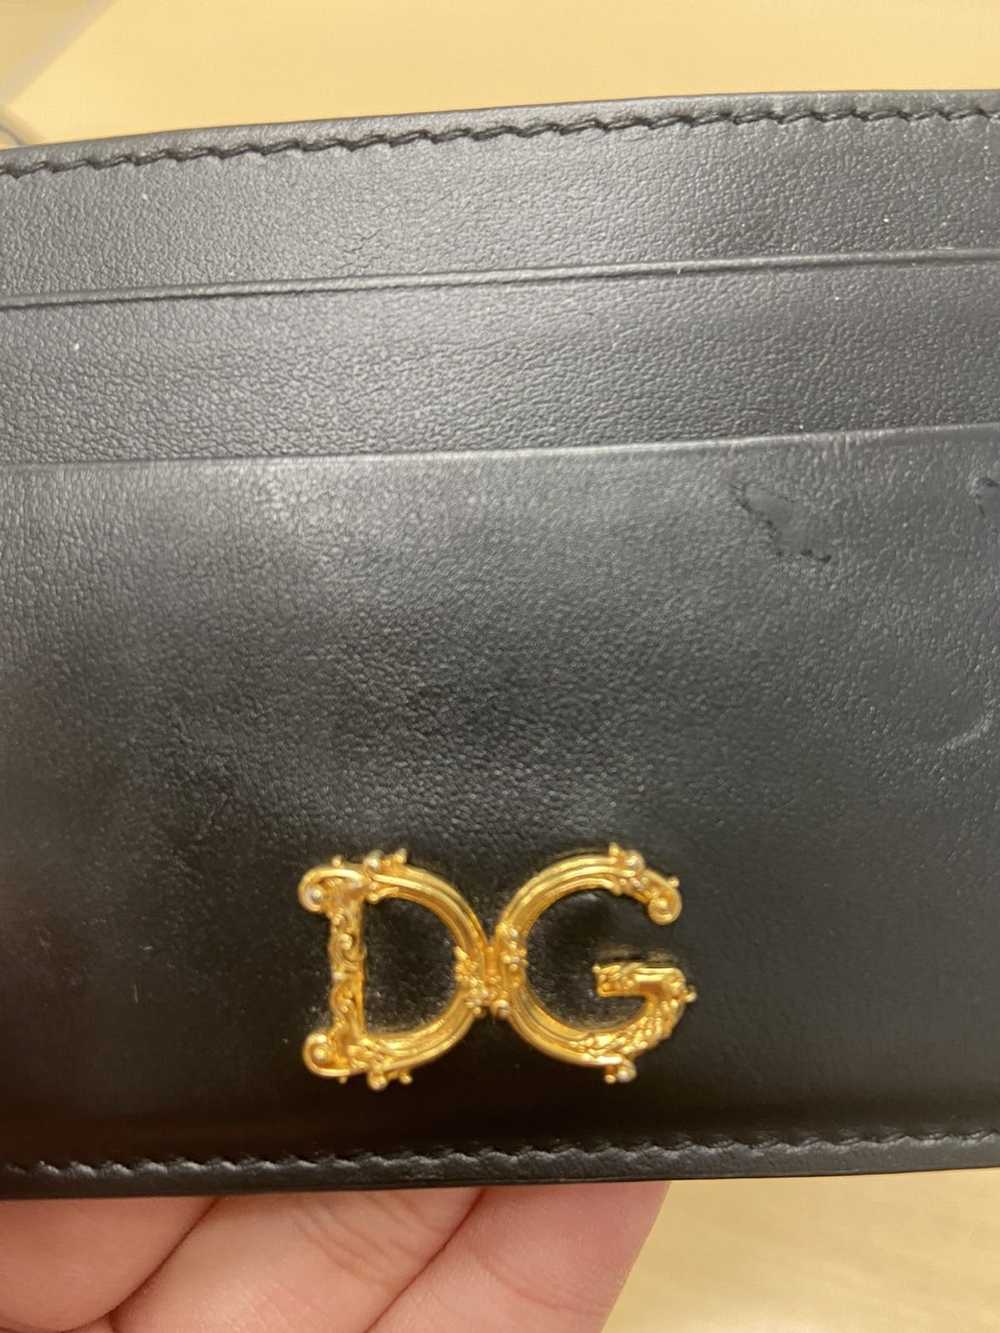 Dolce & Gabbana Dolce gabbana cardholder - image 2